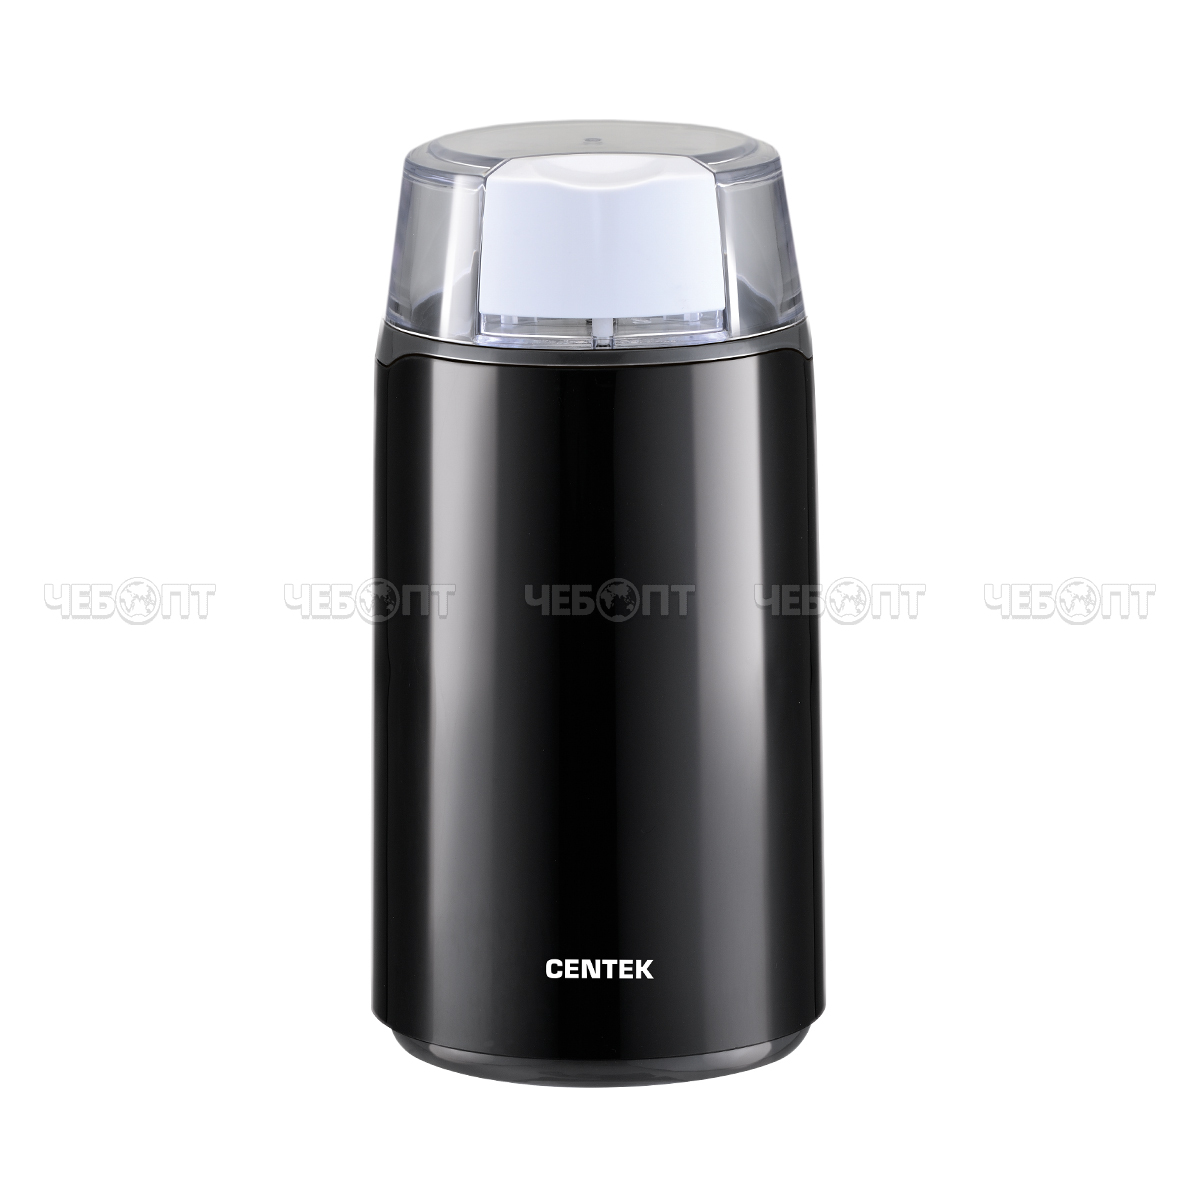 Кофемолка электрическая CENTEK CT-1360 5 чашек кофе, прозрачная крышка, 45 г, мощность 250Вт  [12]. ЧЕБОПТ.